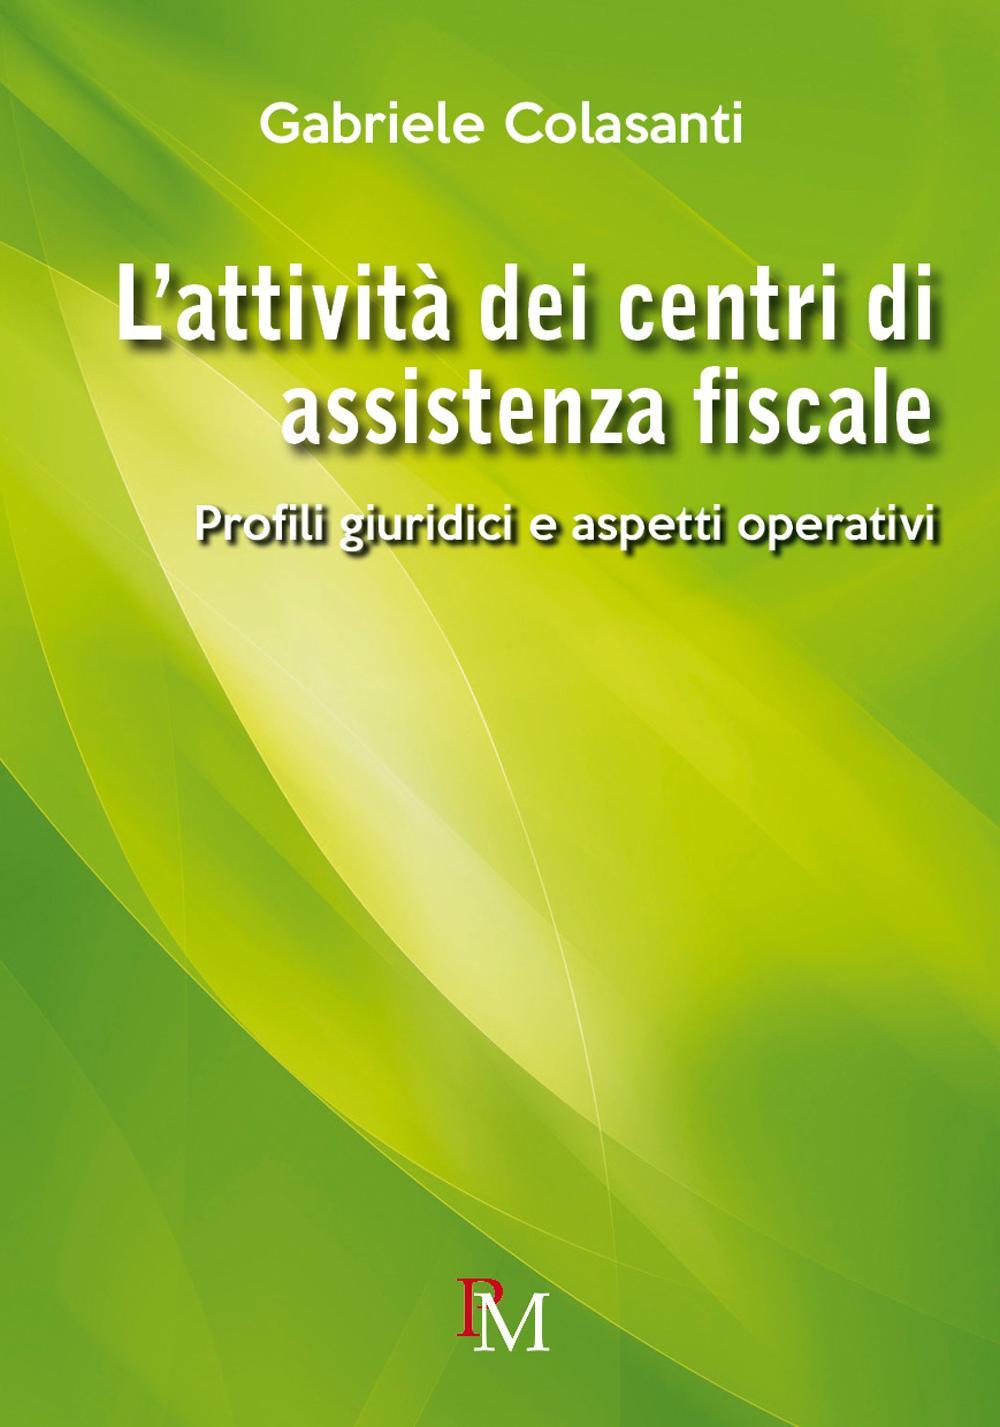 Kniha attività dei centri di assistenza fiscale. Profili giuridici e aspetti operativi Gabriele Colasanti